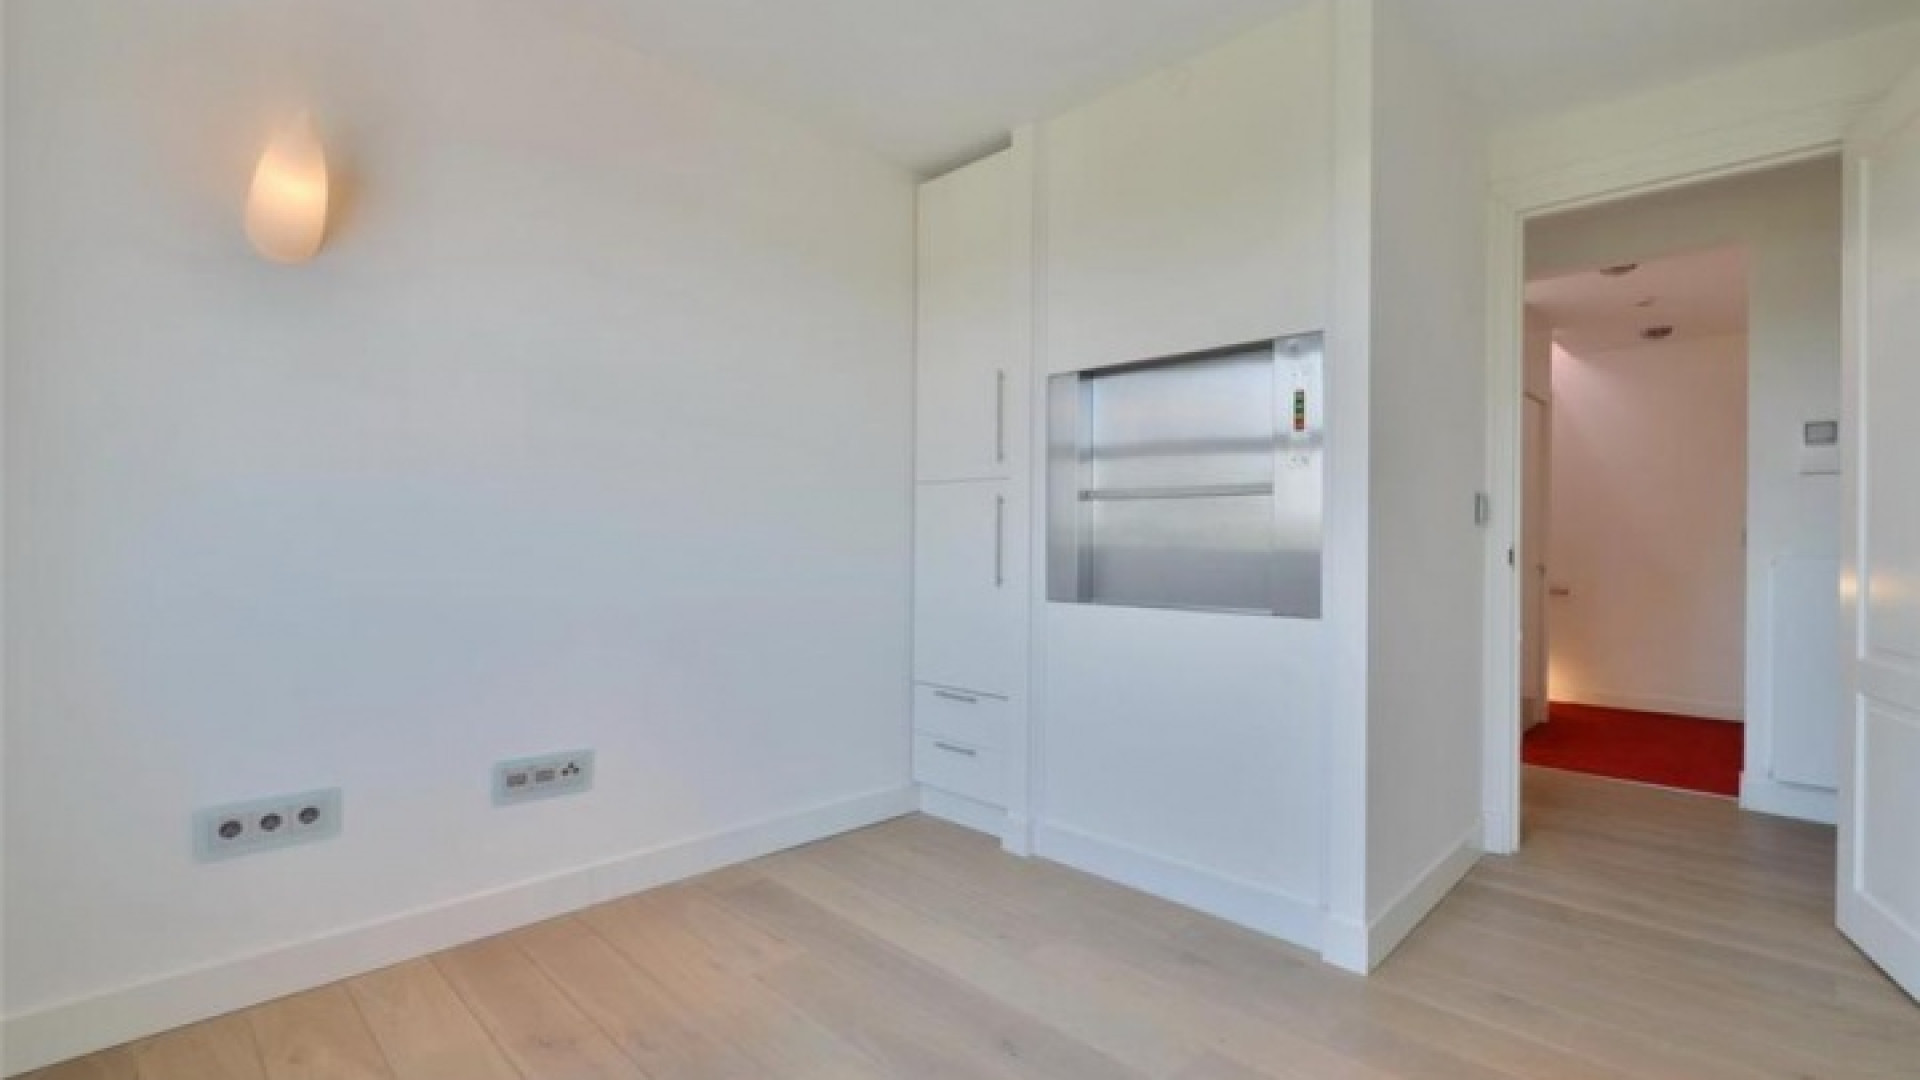 Frank Rijkaard zoekt huurder voor zijn luxe dubbele bovenhuis. Zie foto's 27